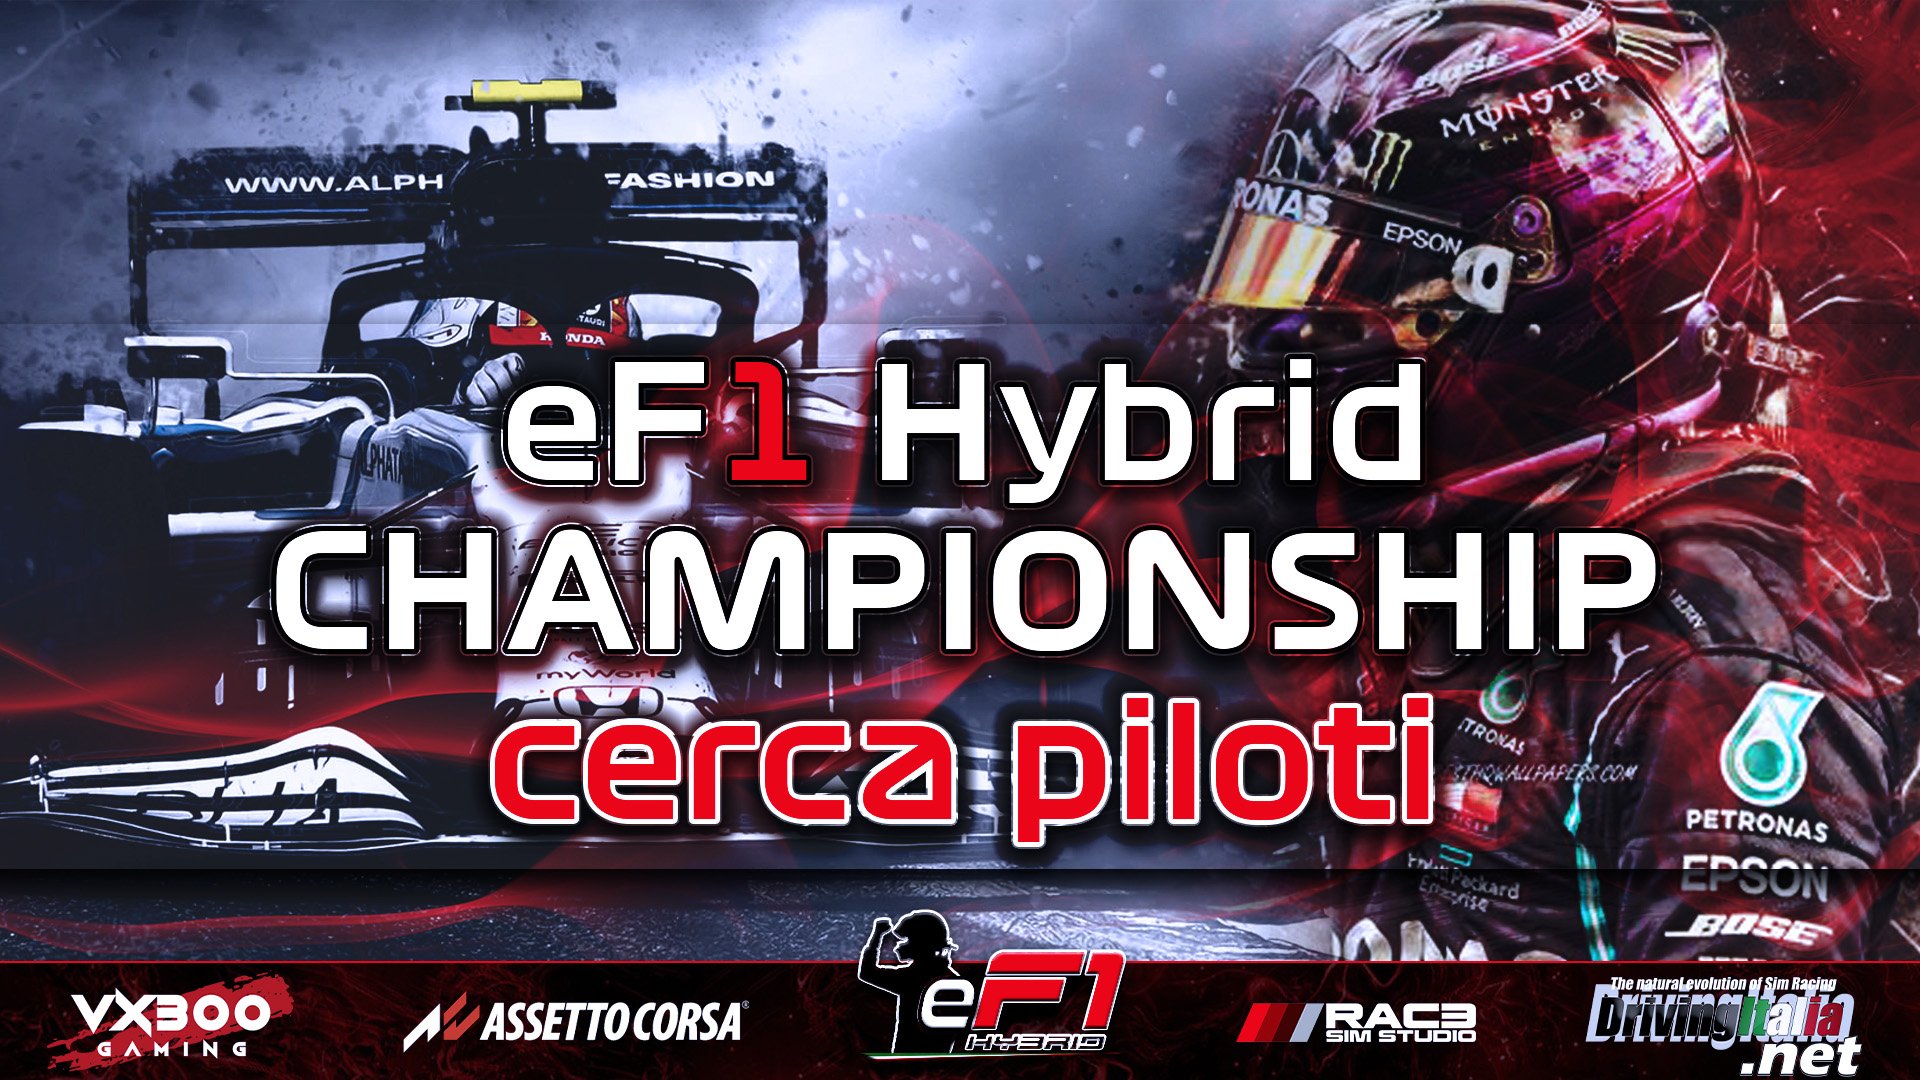 More information about "Assetto Corsa: aperte le iscrizioni al nuovo campionato eF1 Hybrid"